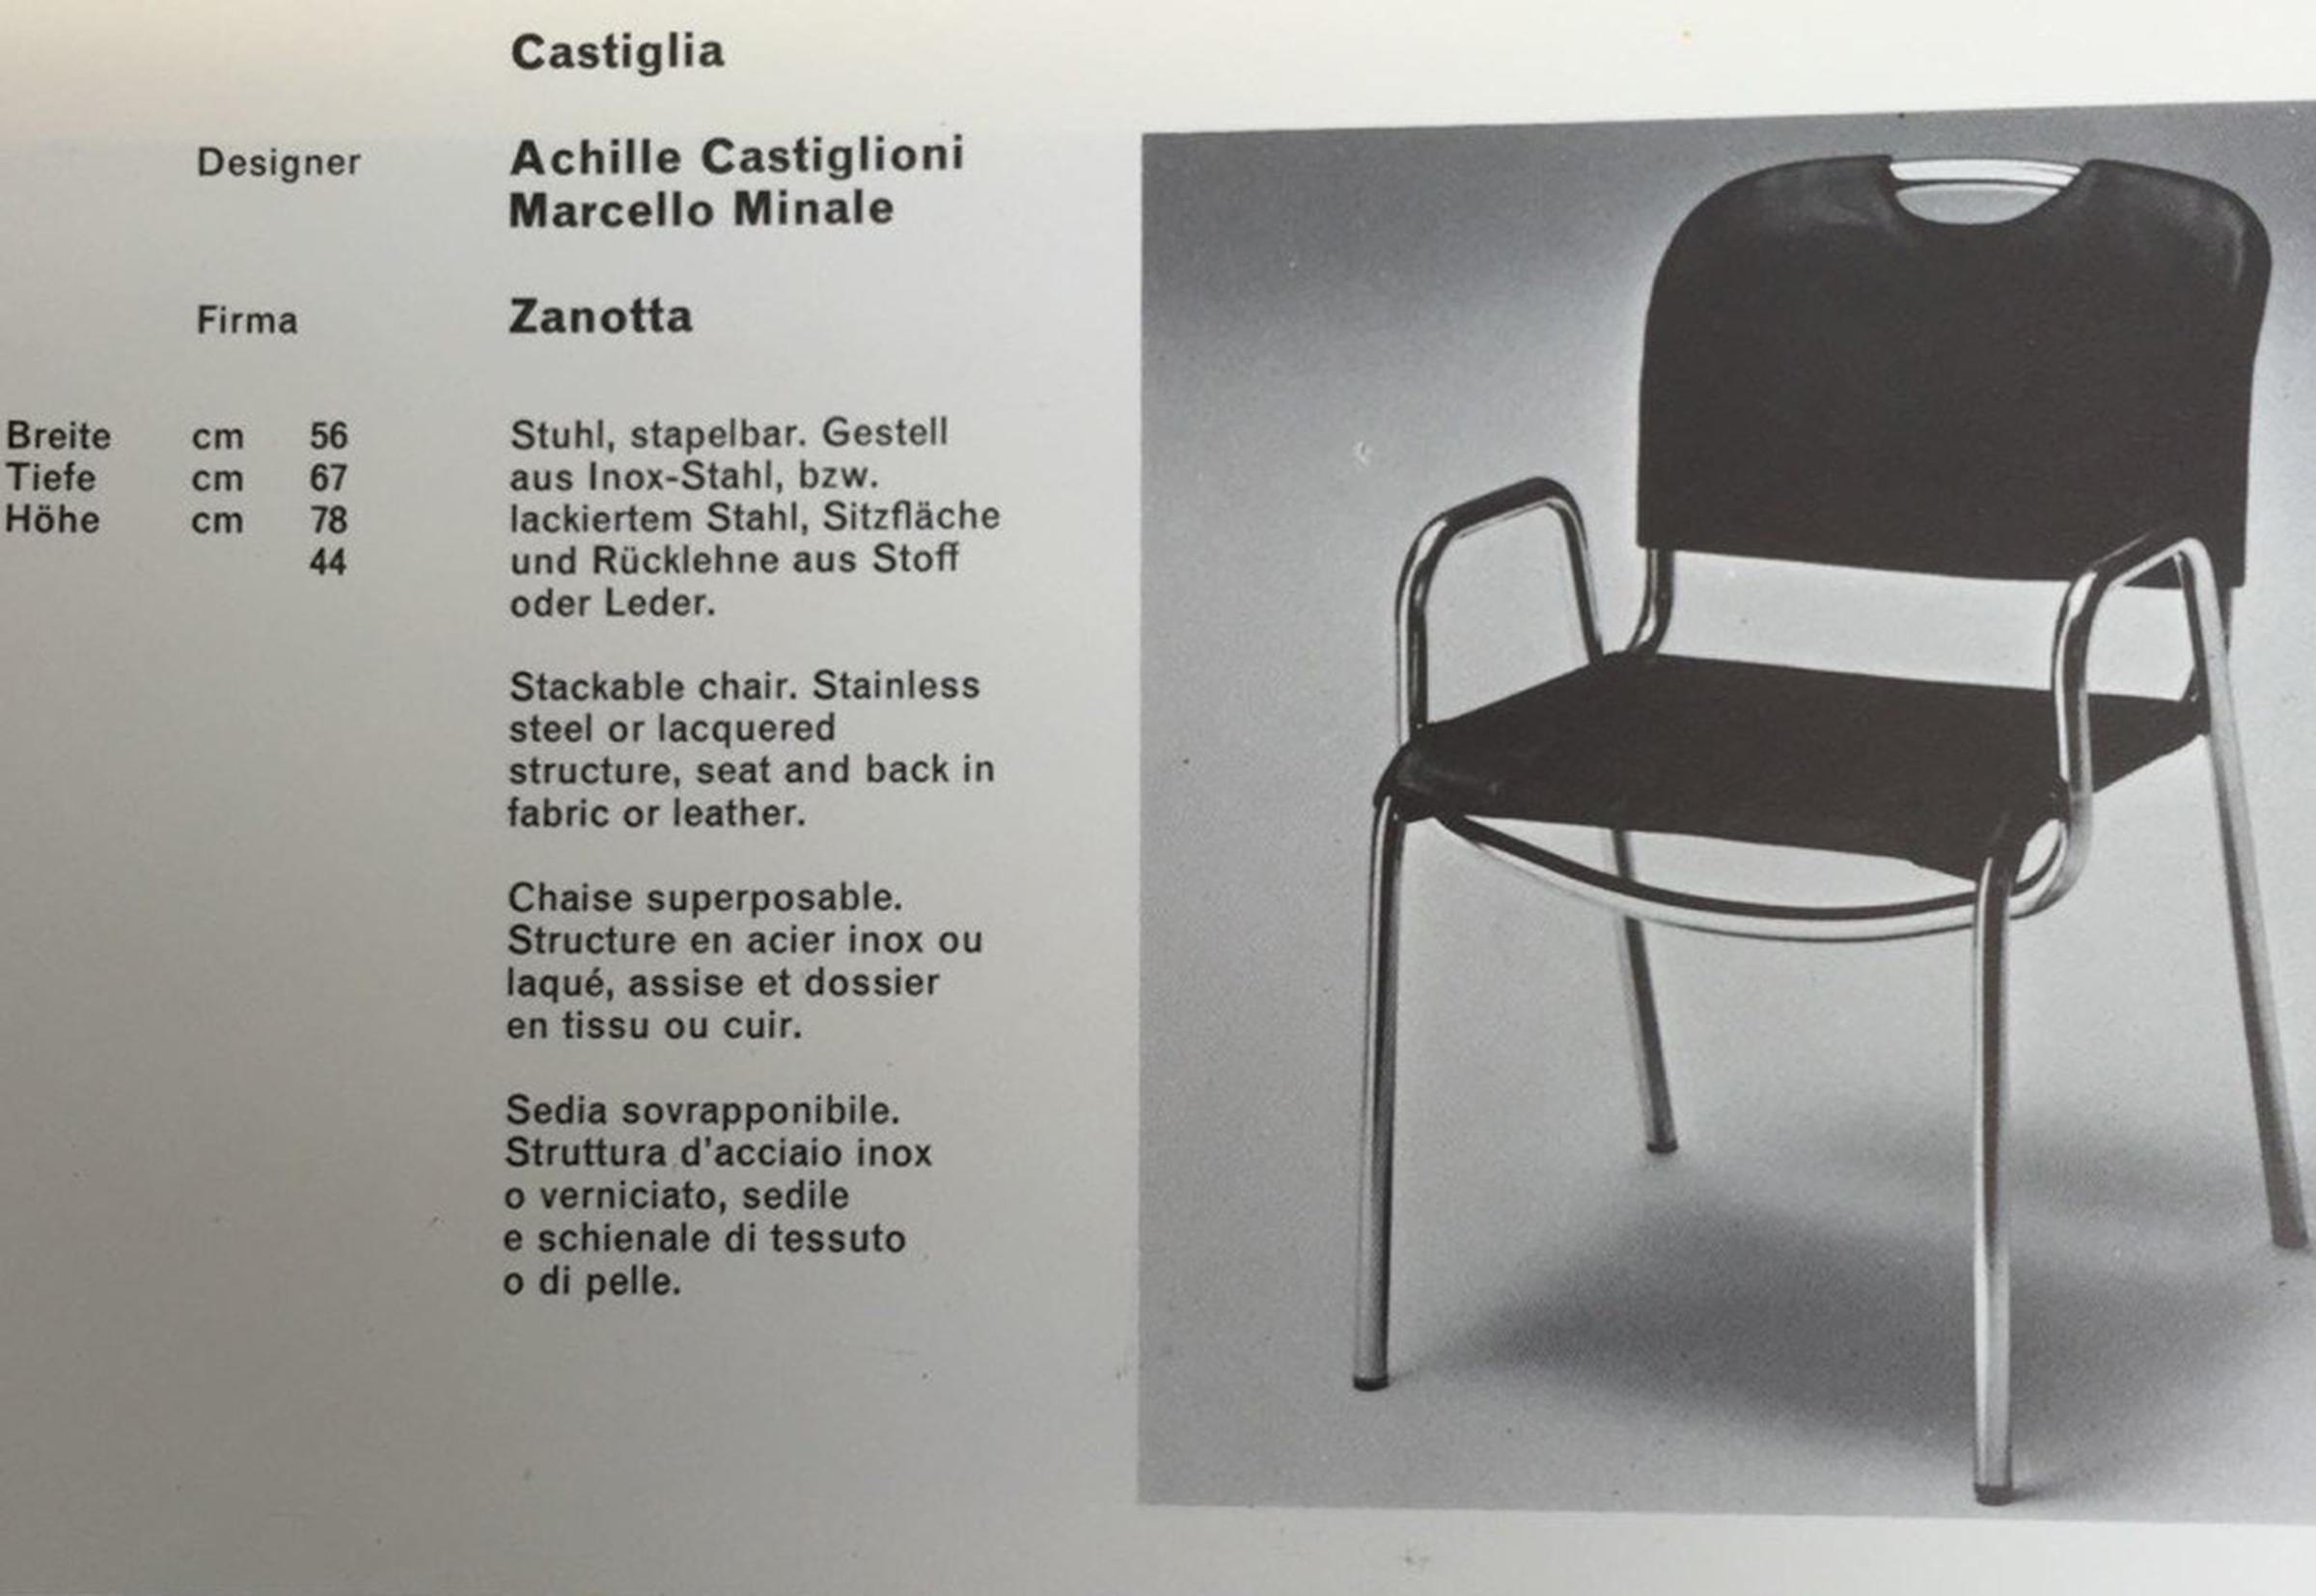 Pair of Blue Castiglietta Dining Chairs by Castiglioni for Zanotta, Italy 1960s For Sale 10